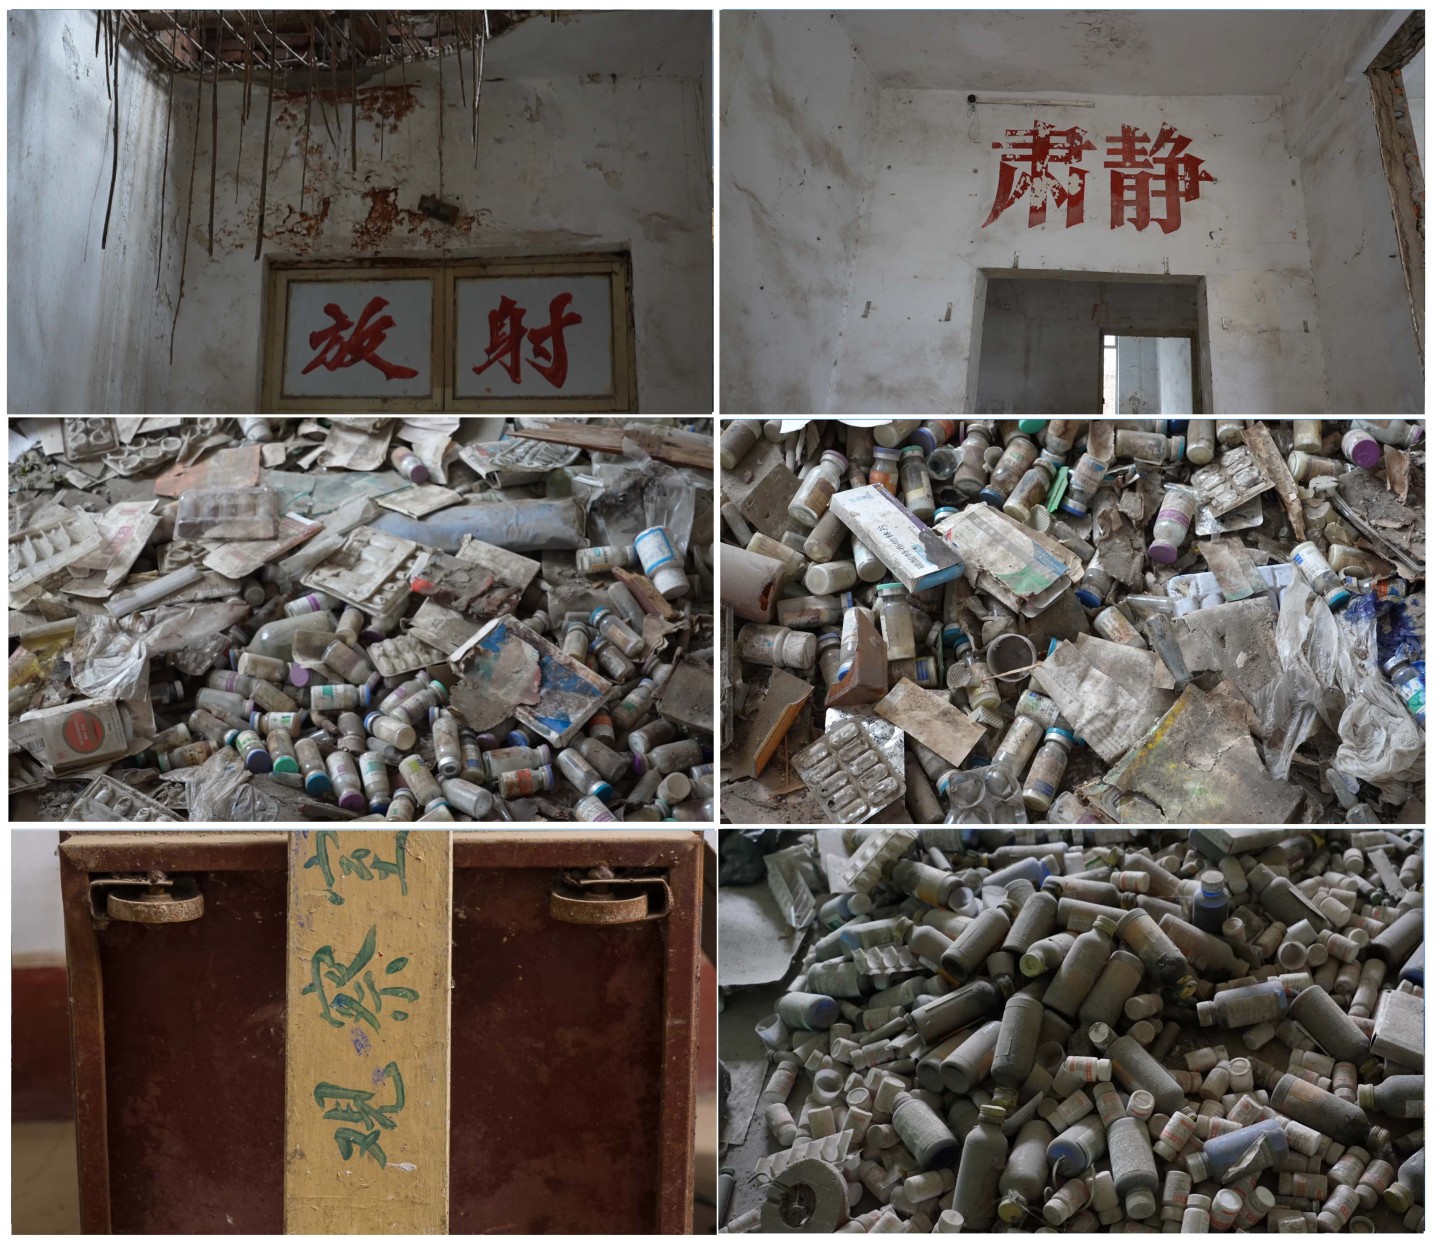 废弃医院医疗废弃物垃圾荒凉历史过往